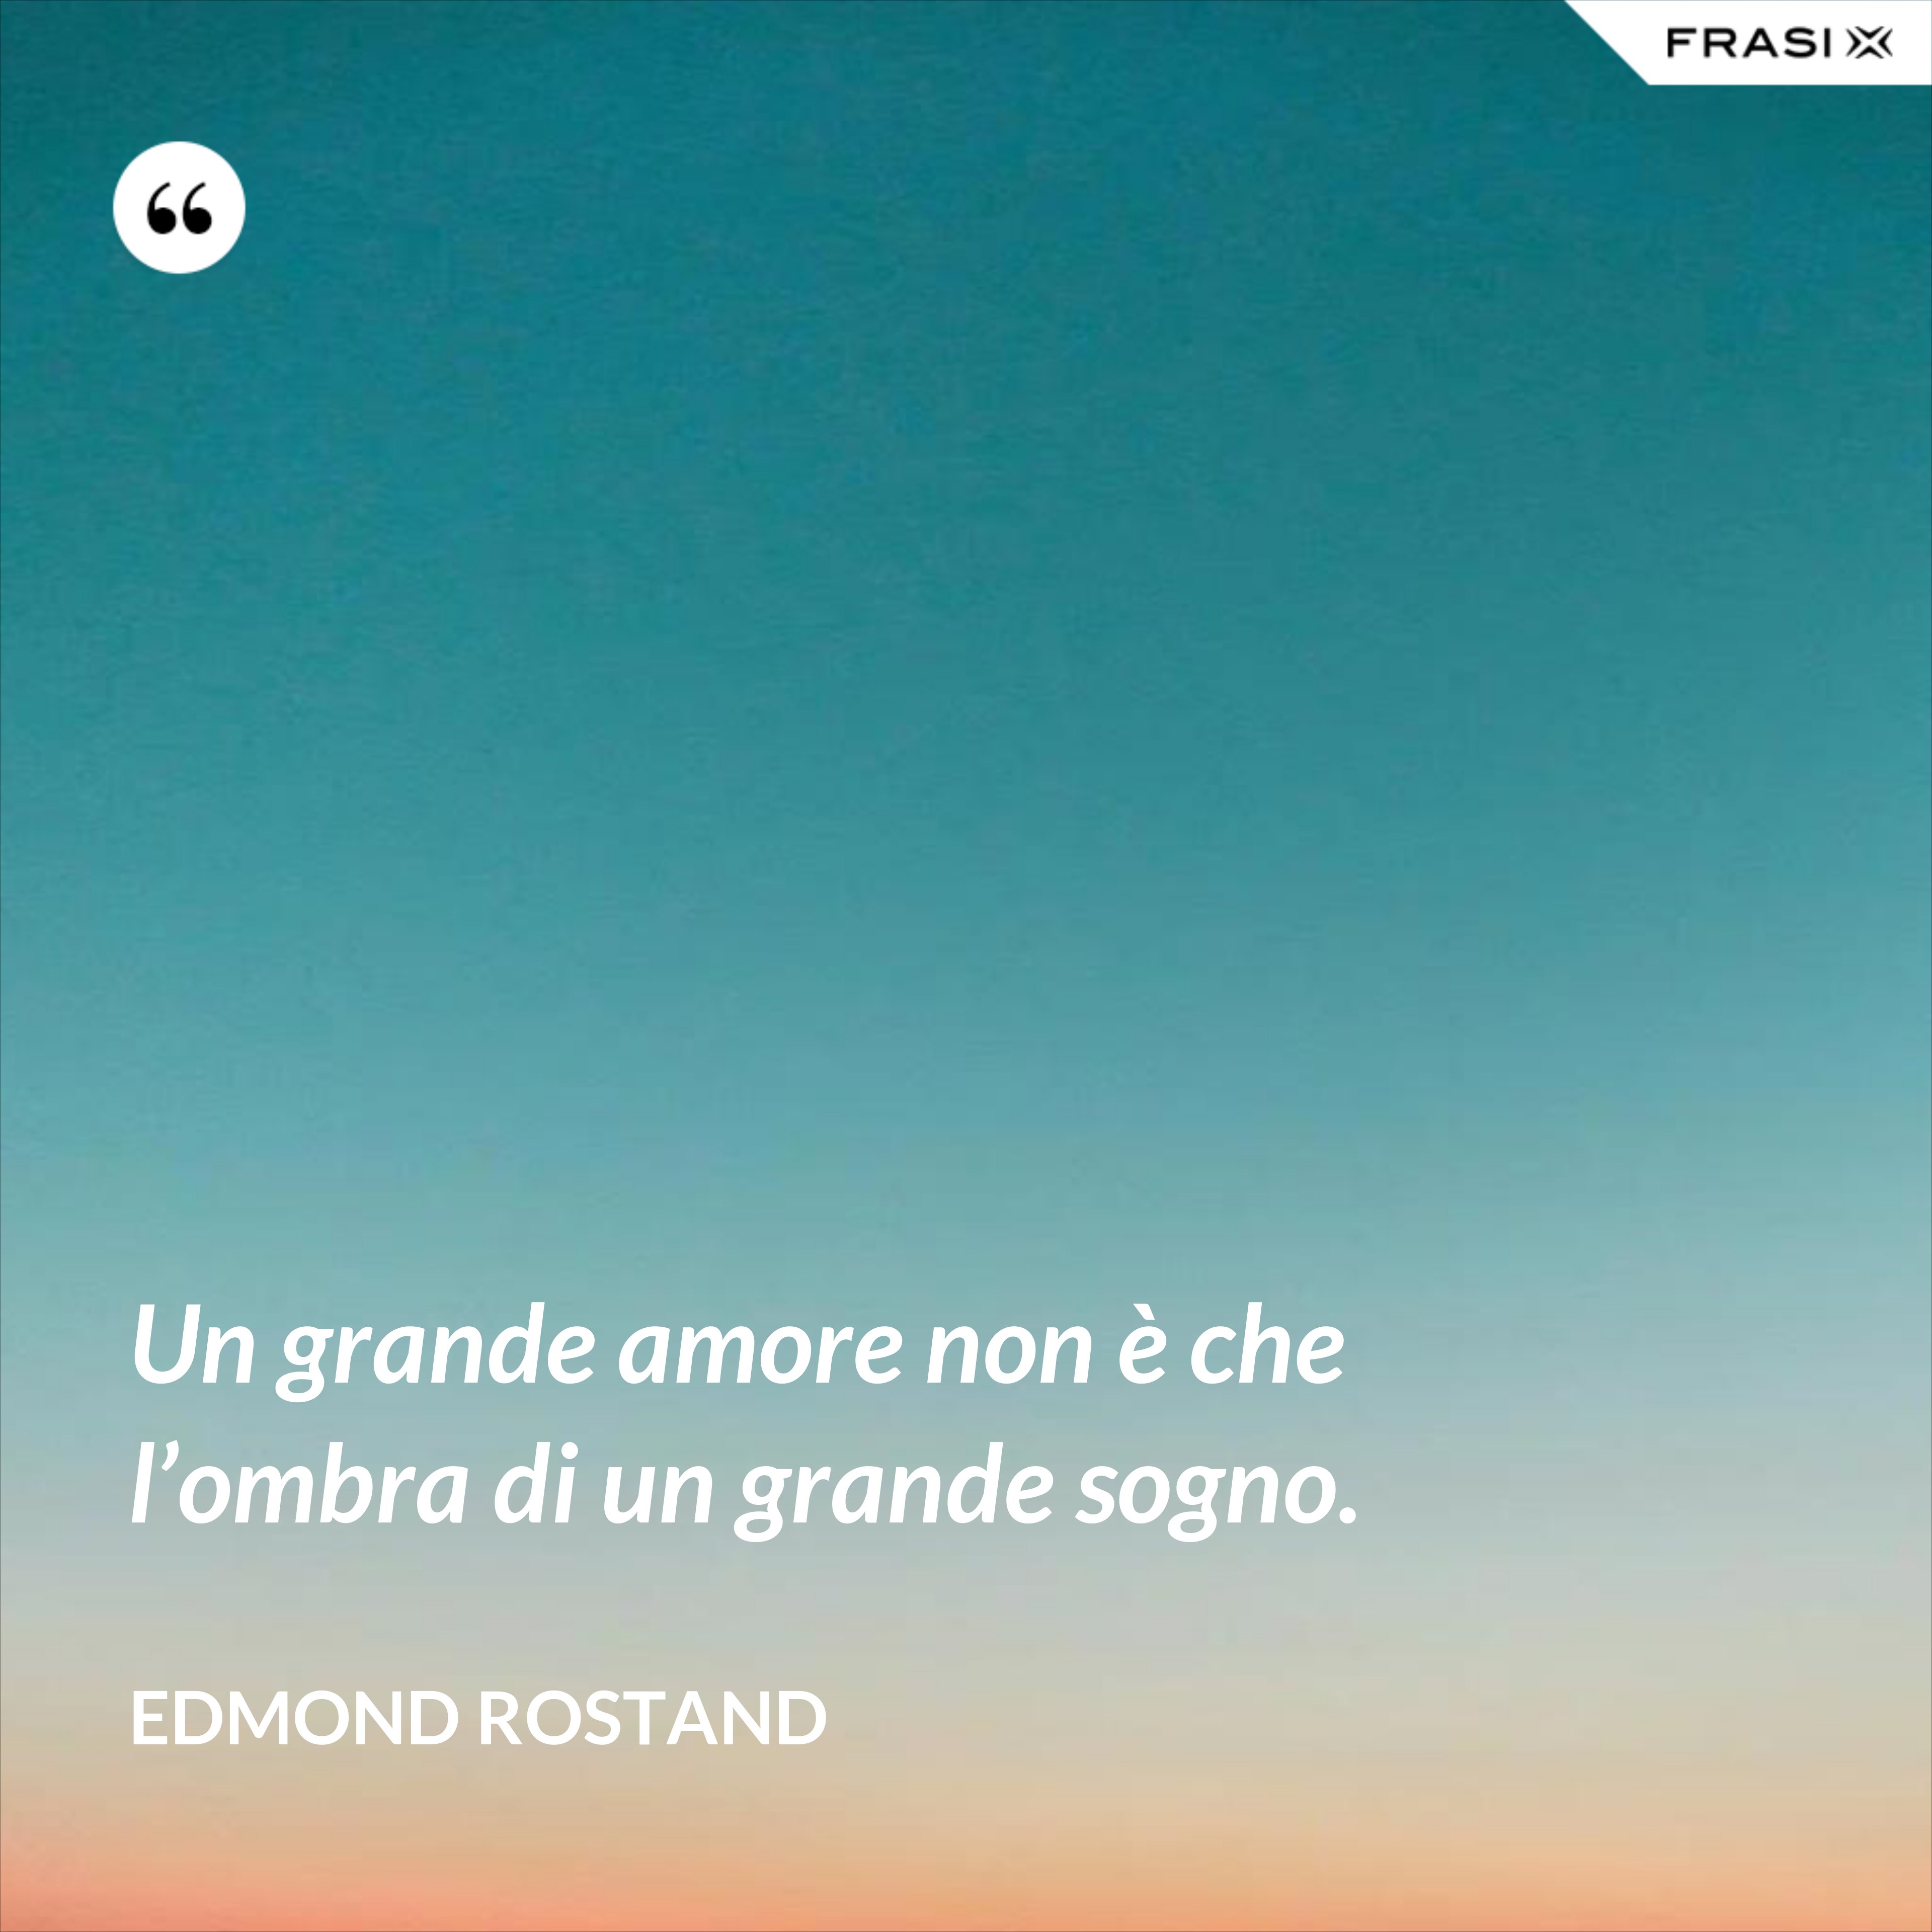 Un grande amore non è che l’ombra di un grande sogno. - Edmond Rostand